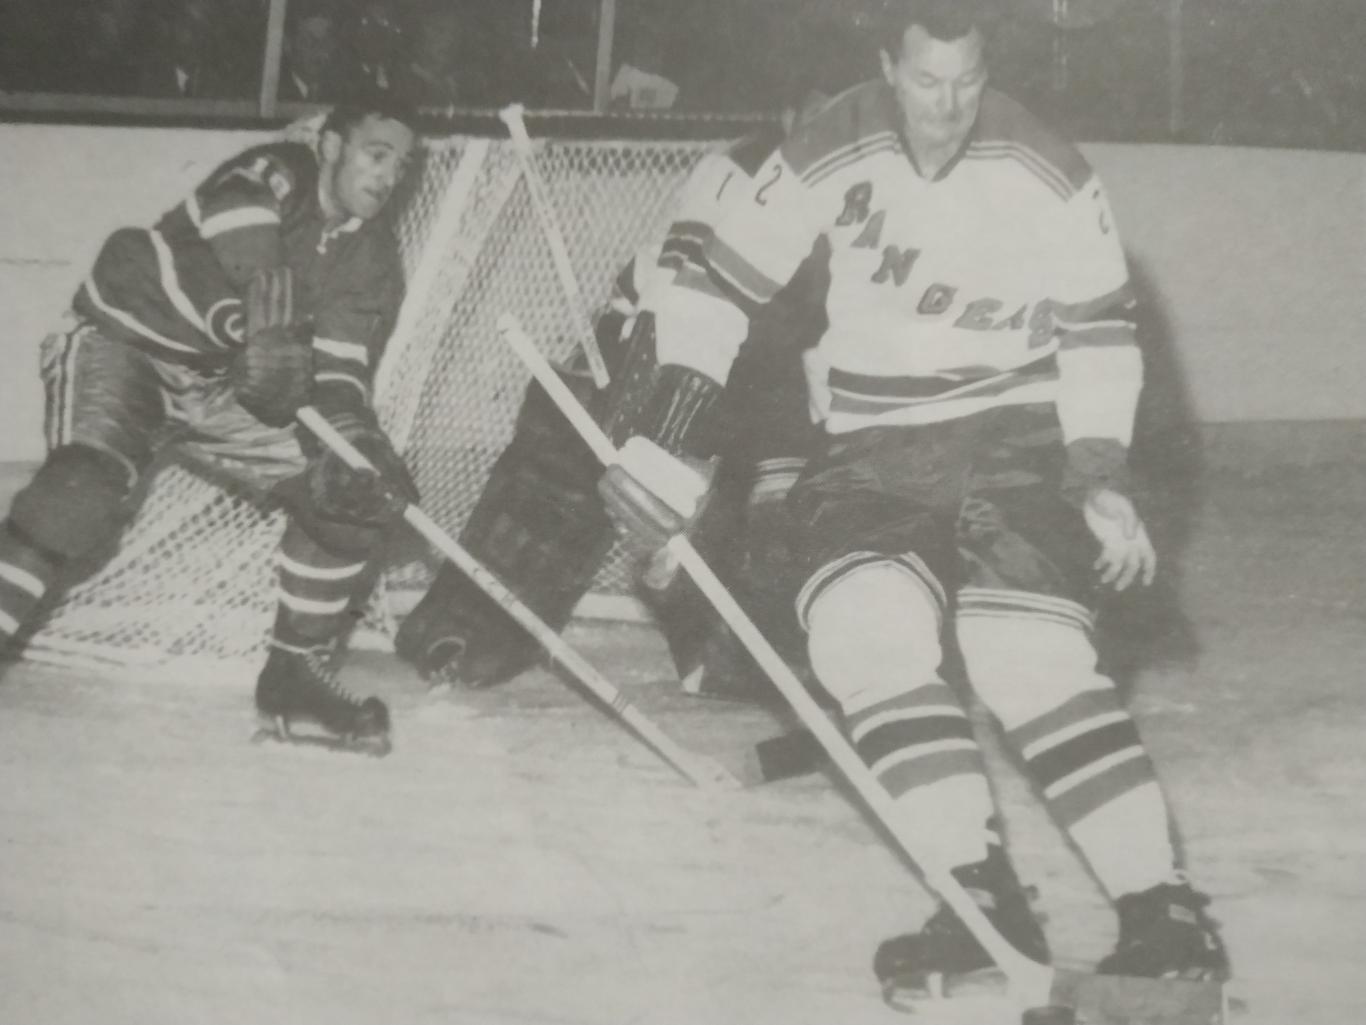 ХОККЕЙ ЖУРНАЛ ЕЖЕМЕСЯЧНИК СПОРТ РЕВЬЮ НХЛ NHL 1961 DECEMBRE SPORT REVUE 5